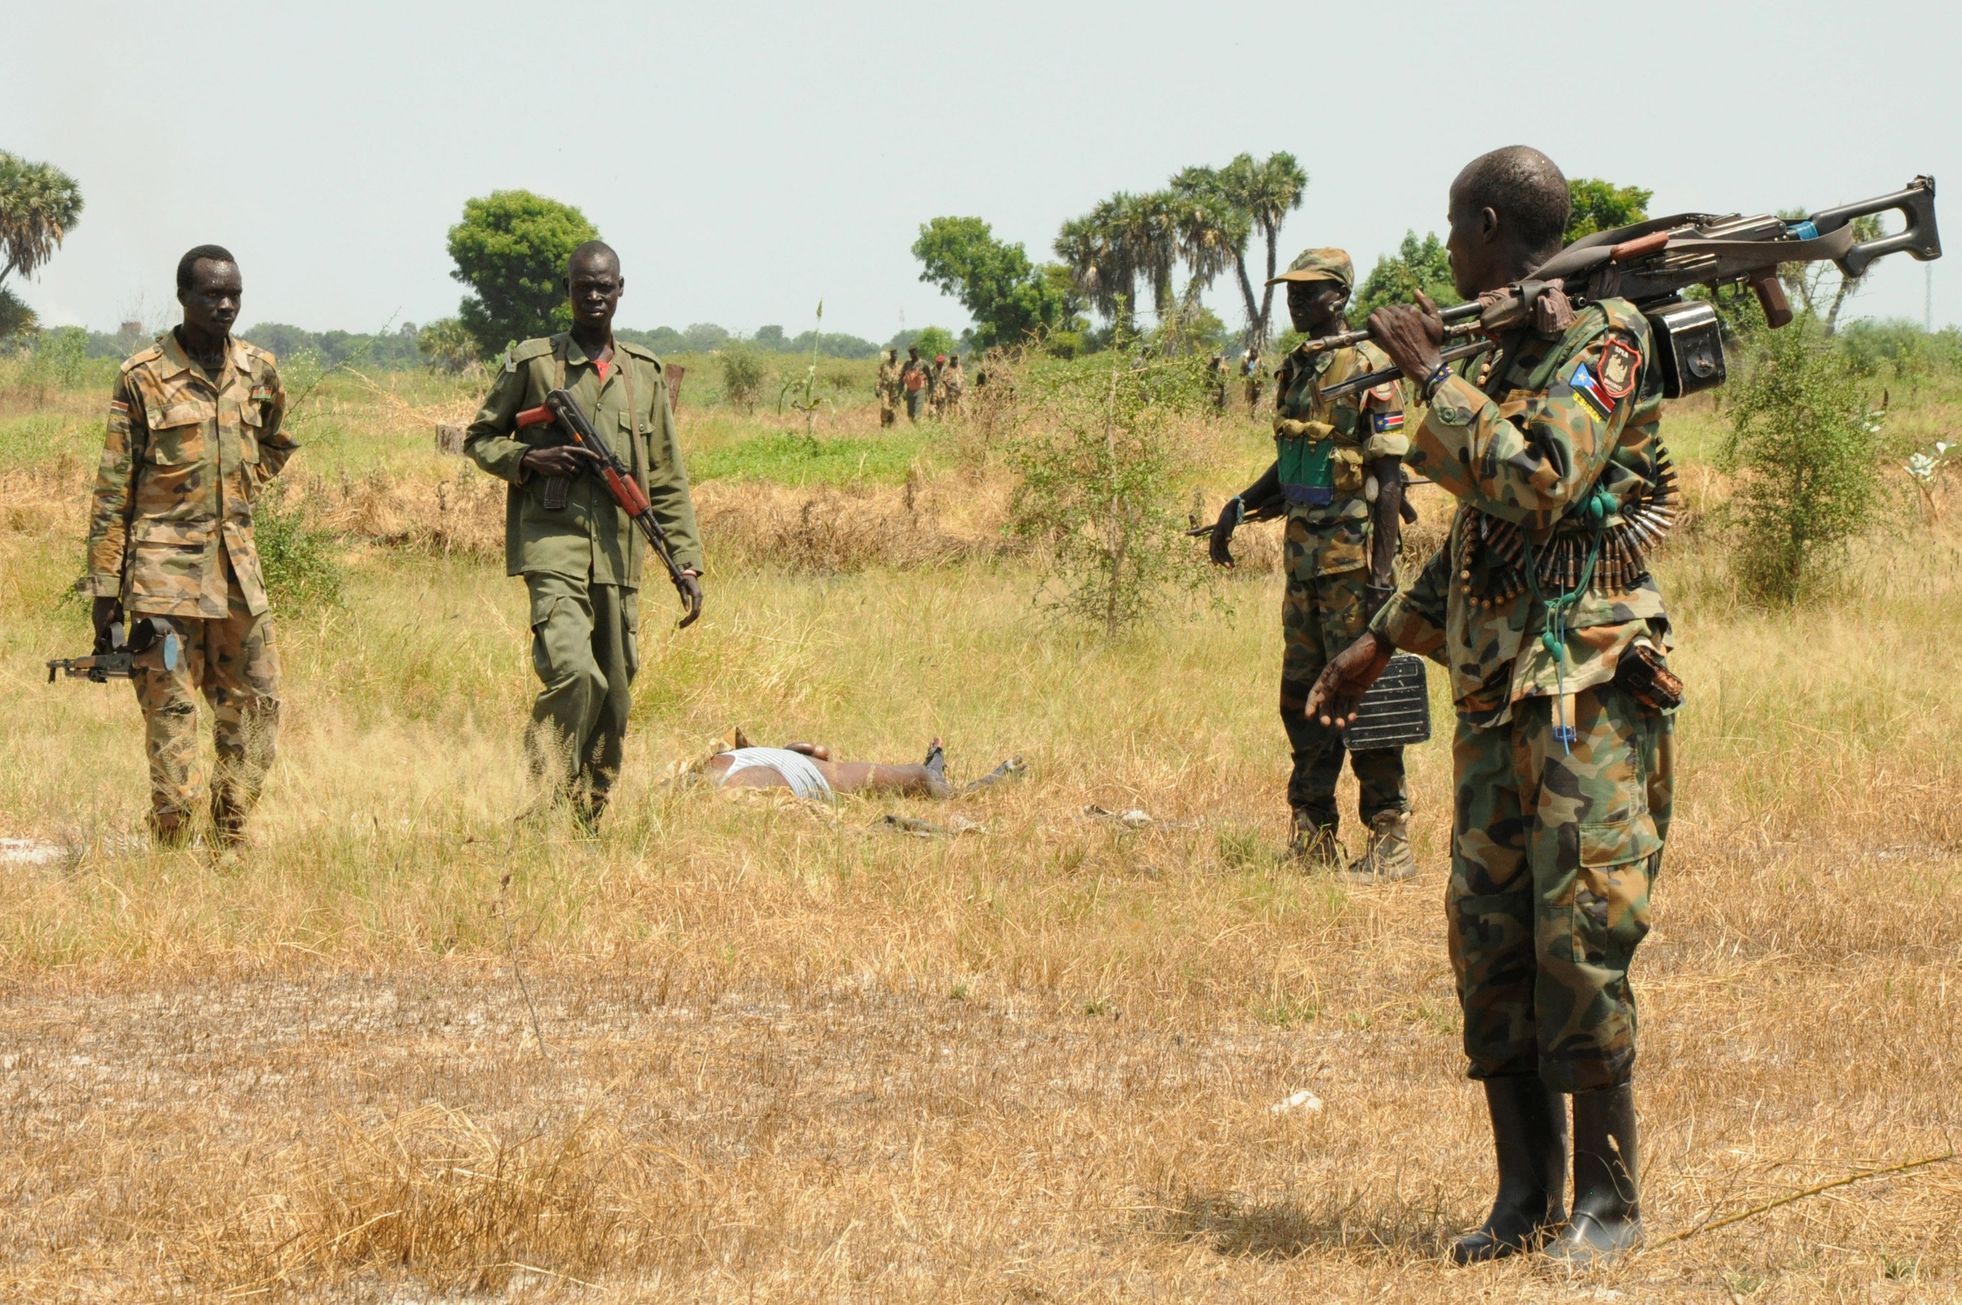 Vojáci v Jižním Súdánu